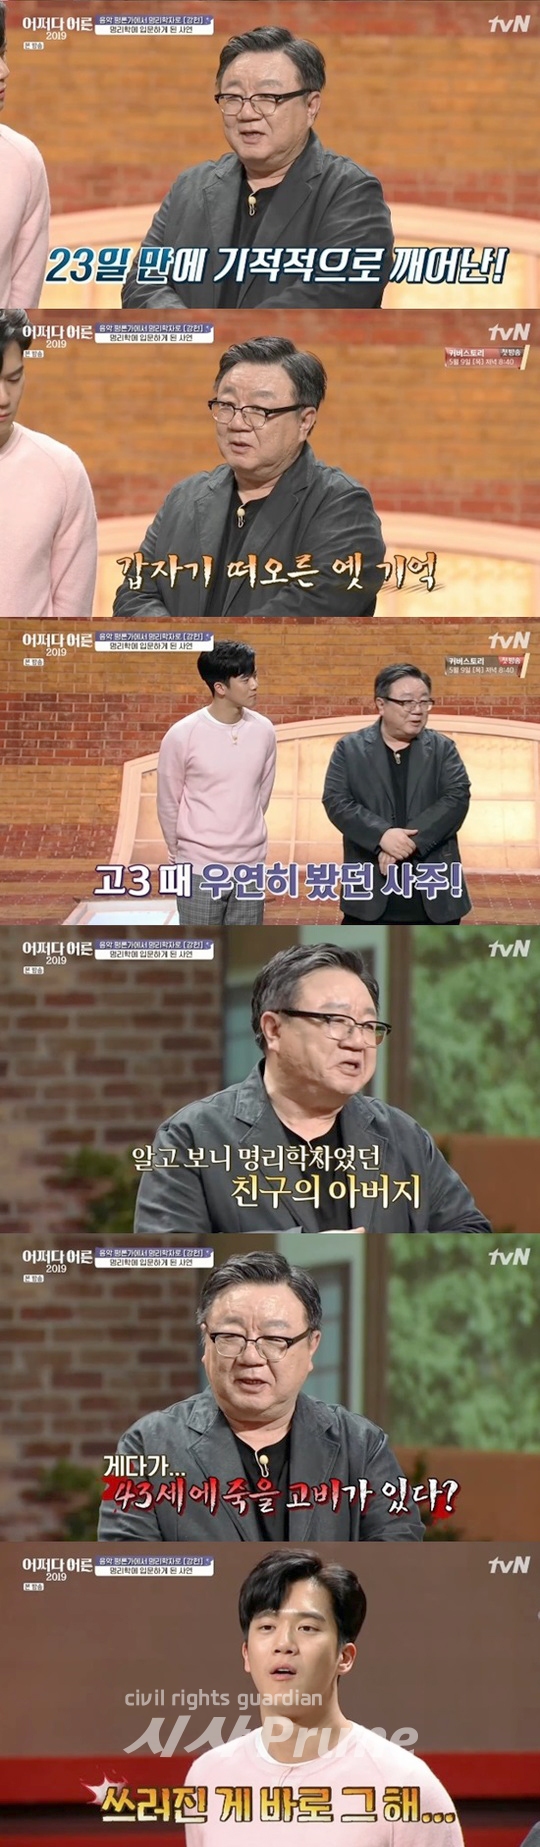 tvN ‘어쩌다 어른 2019’에서는 명리학자 강헌이 출연해 관심을 모았다.